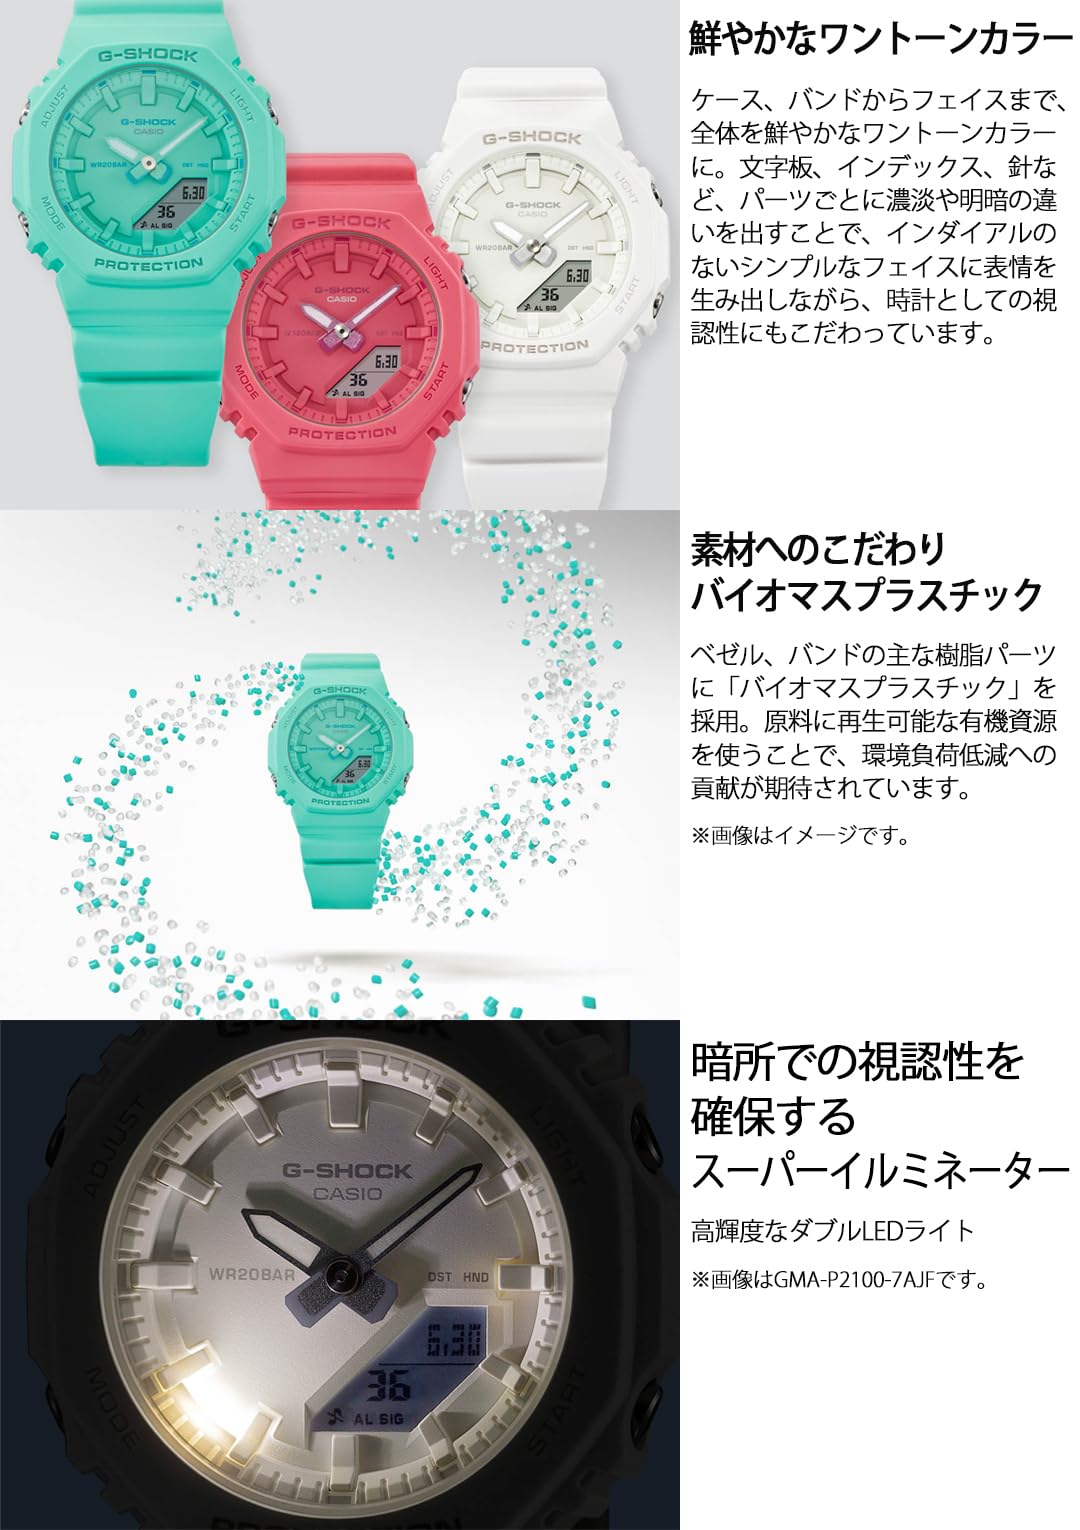 ジーショック [カシオ] 腕時計 【国内正規品】ミッドサイズモデルバイオマスプラスチック採用 GMA-P2100-7AJF レディース ホワイト - BanzaiHobby